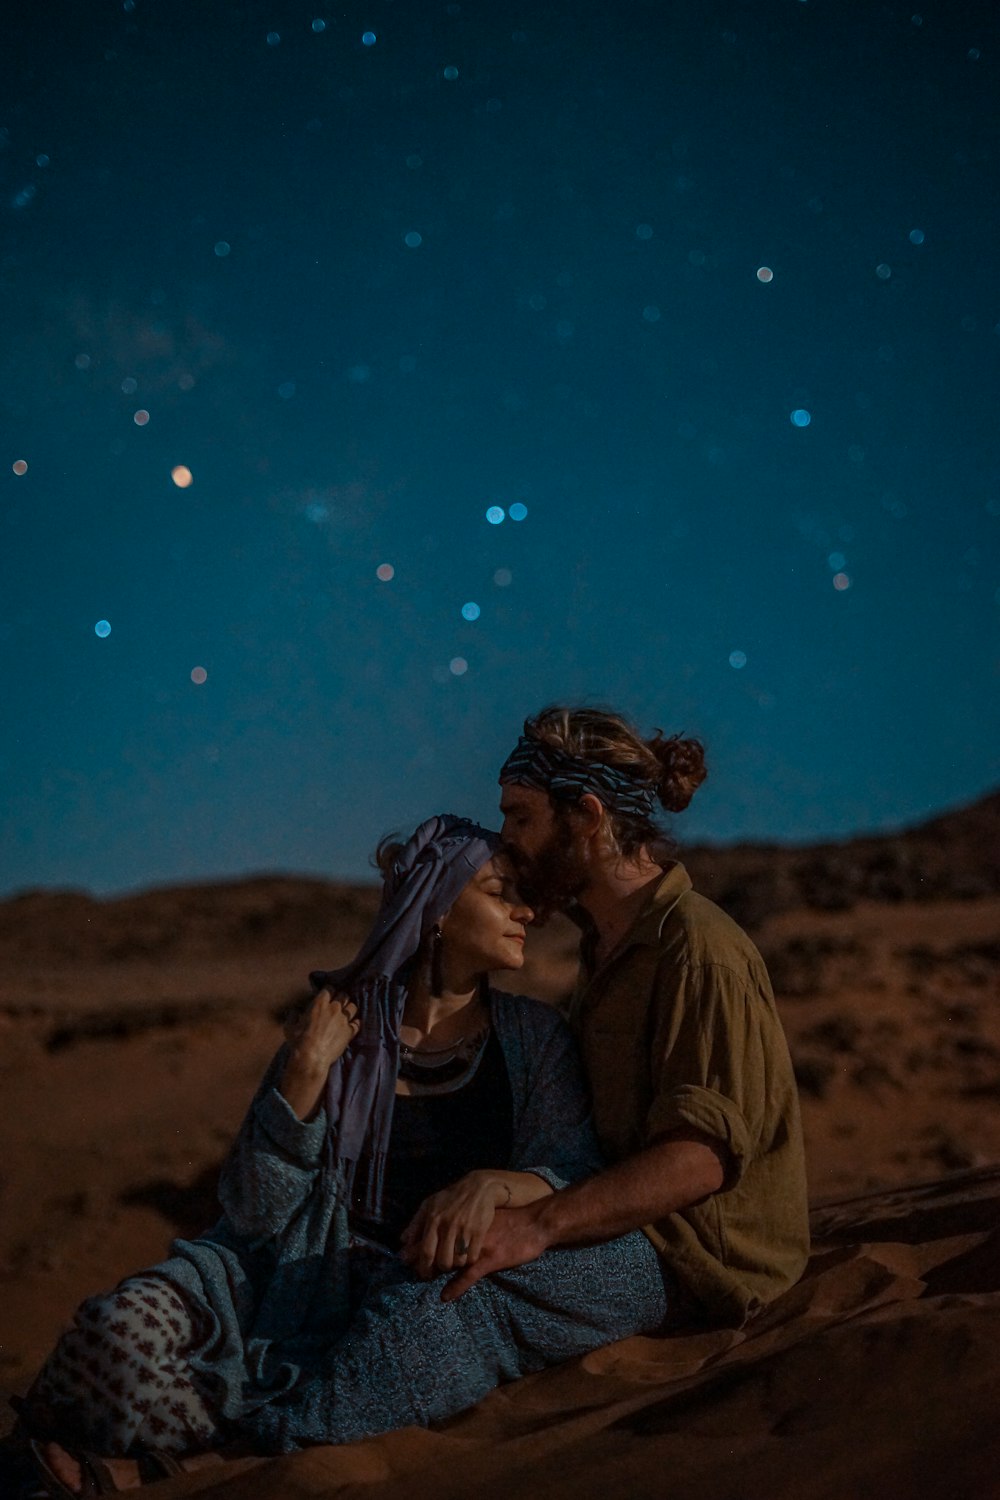 Mann und Frau sitzen nachts auf Wüstensand unter blauem Himmel